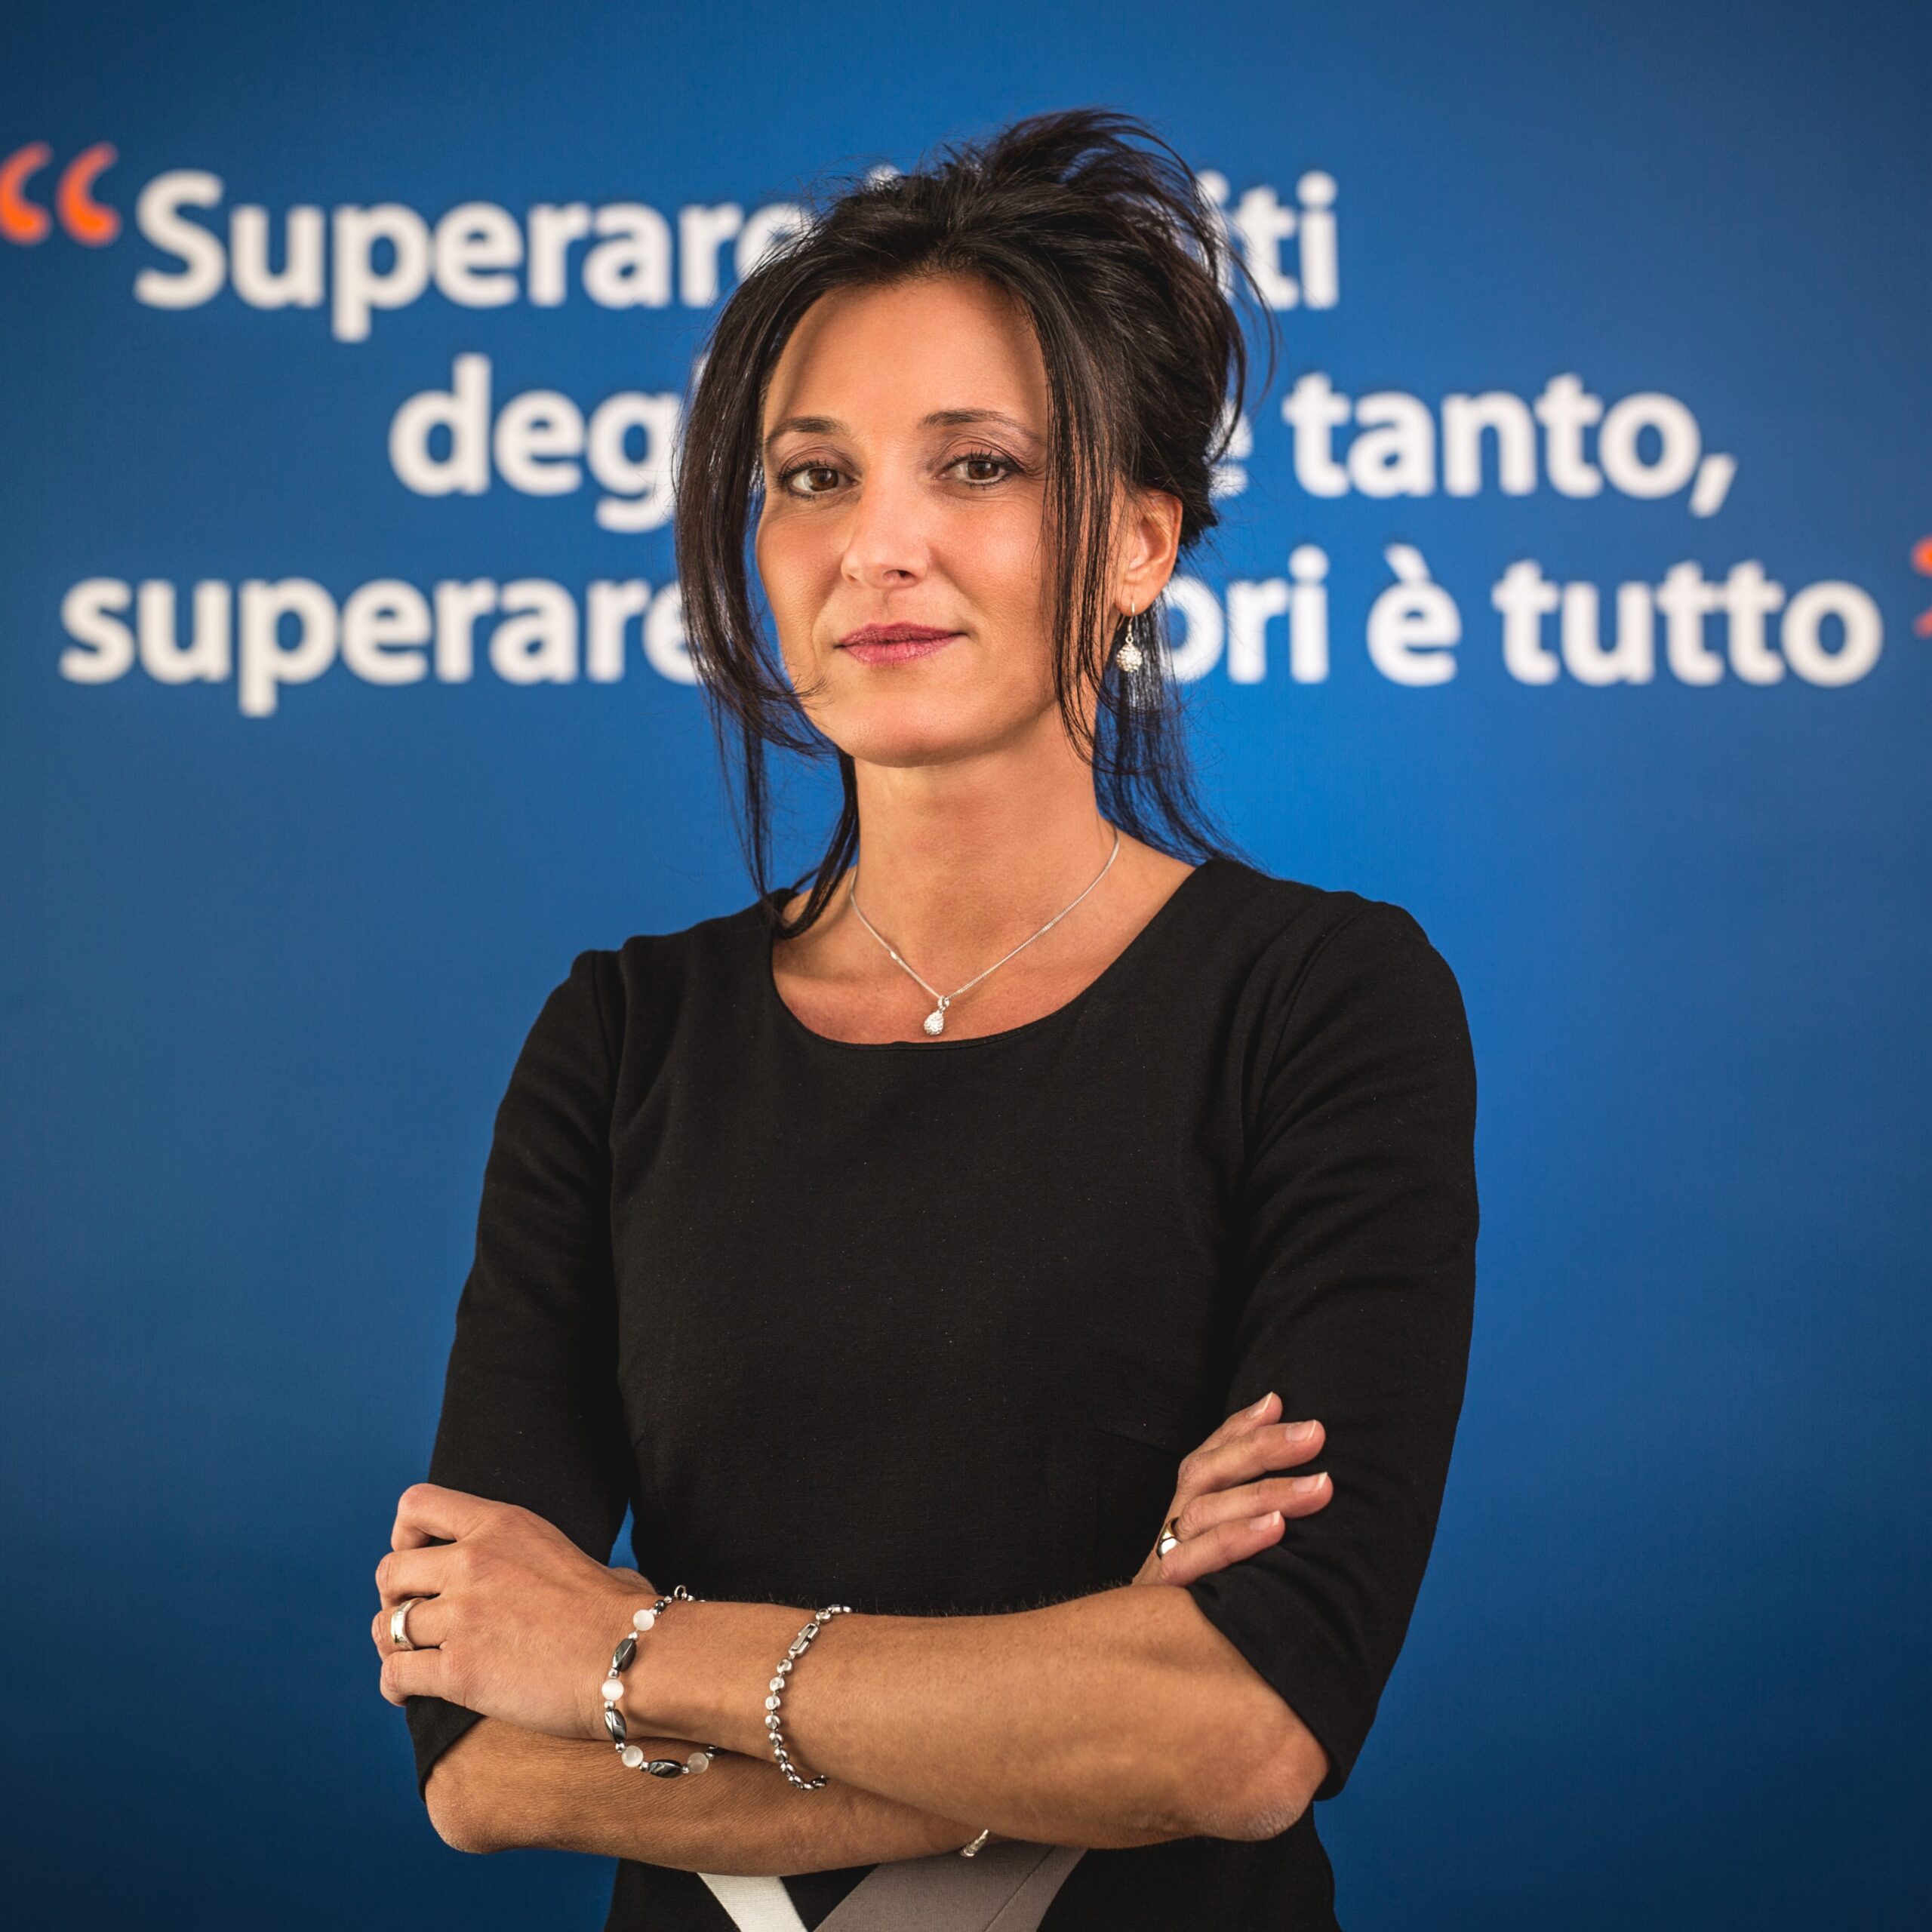 Laura Rocchetto